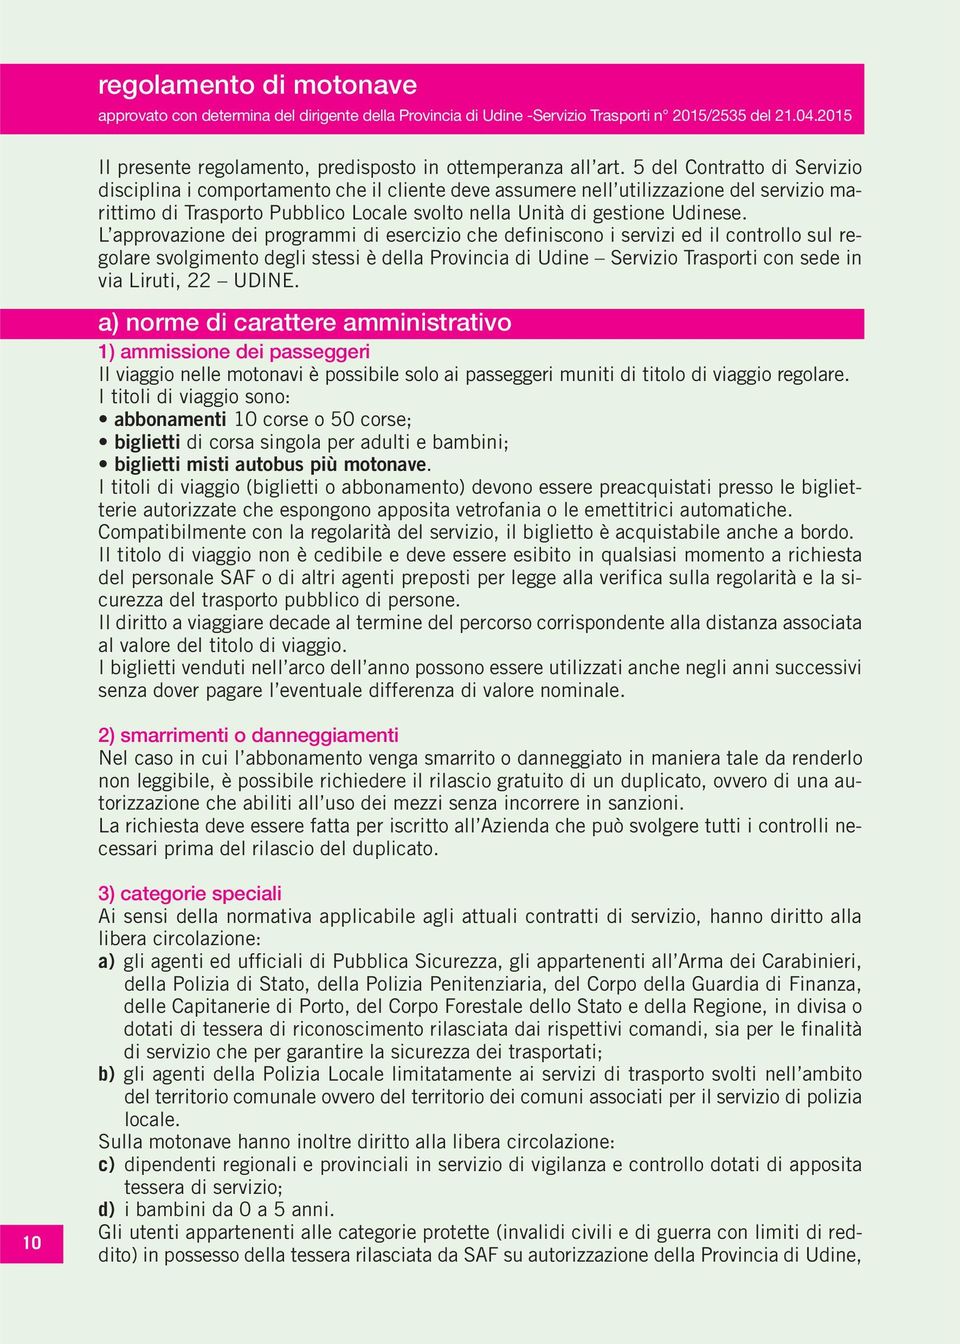 L approvazione dei programmi di esercizio che definiscono i servizi ed il controllo sul regolare svolgimento degli stessi è della Provincia di Udine Servizio Trasporti con sede in via Liruti, 22